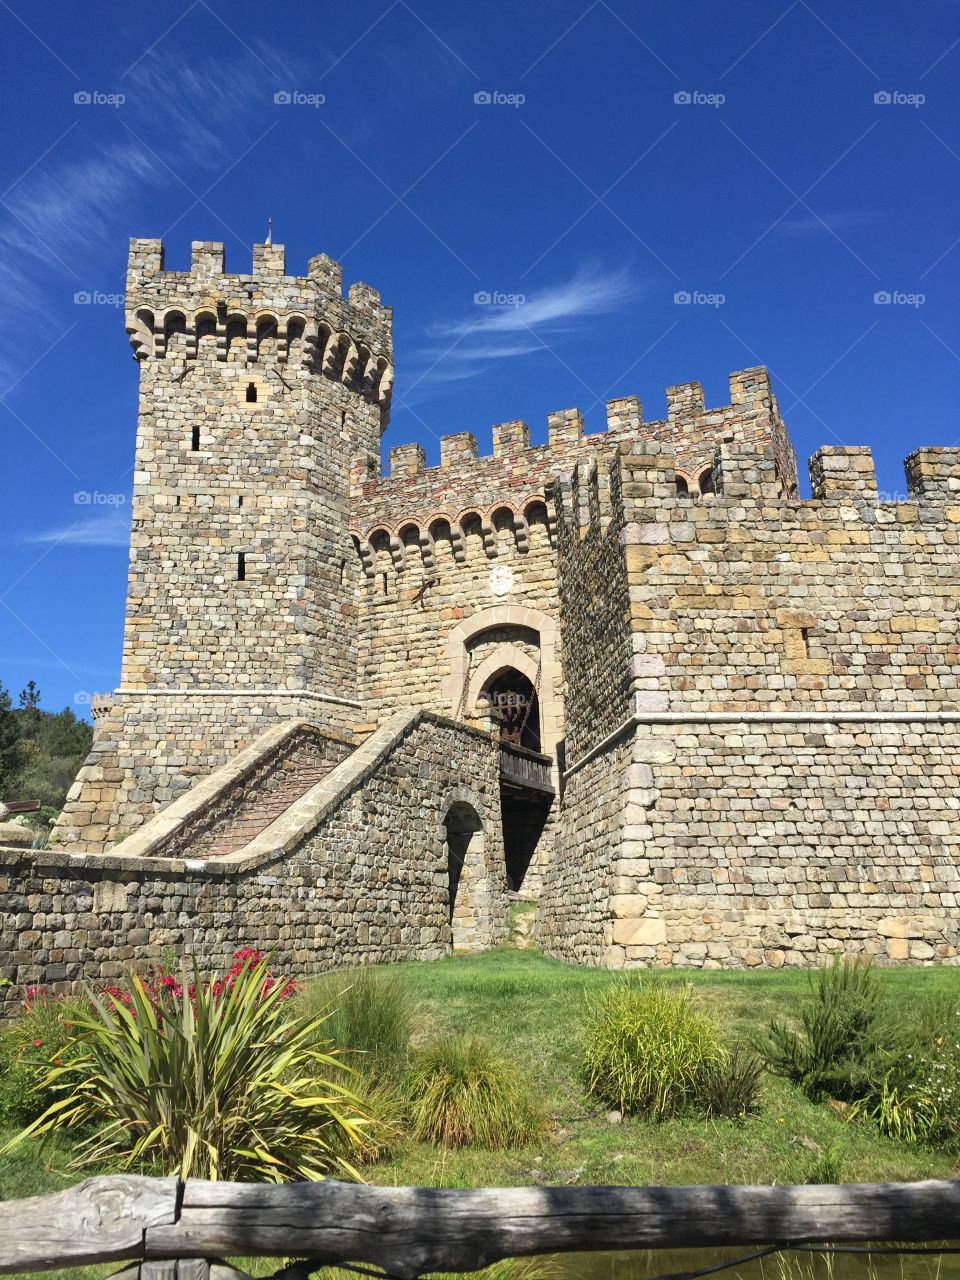 Castello di Amoroso, Napa Valley winery 